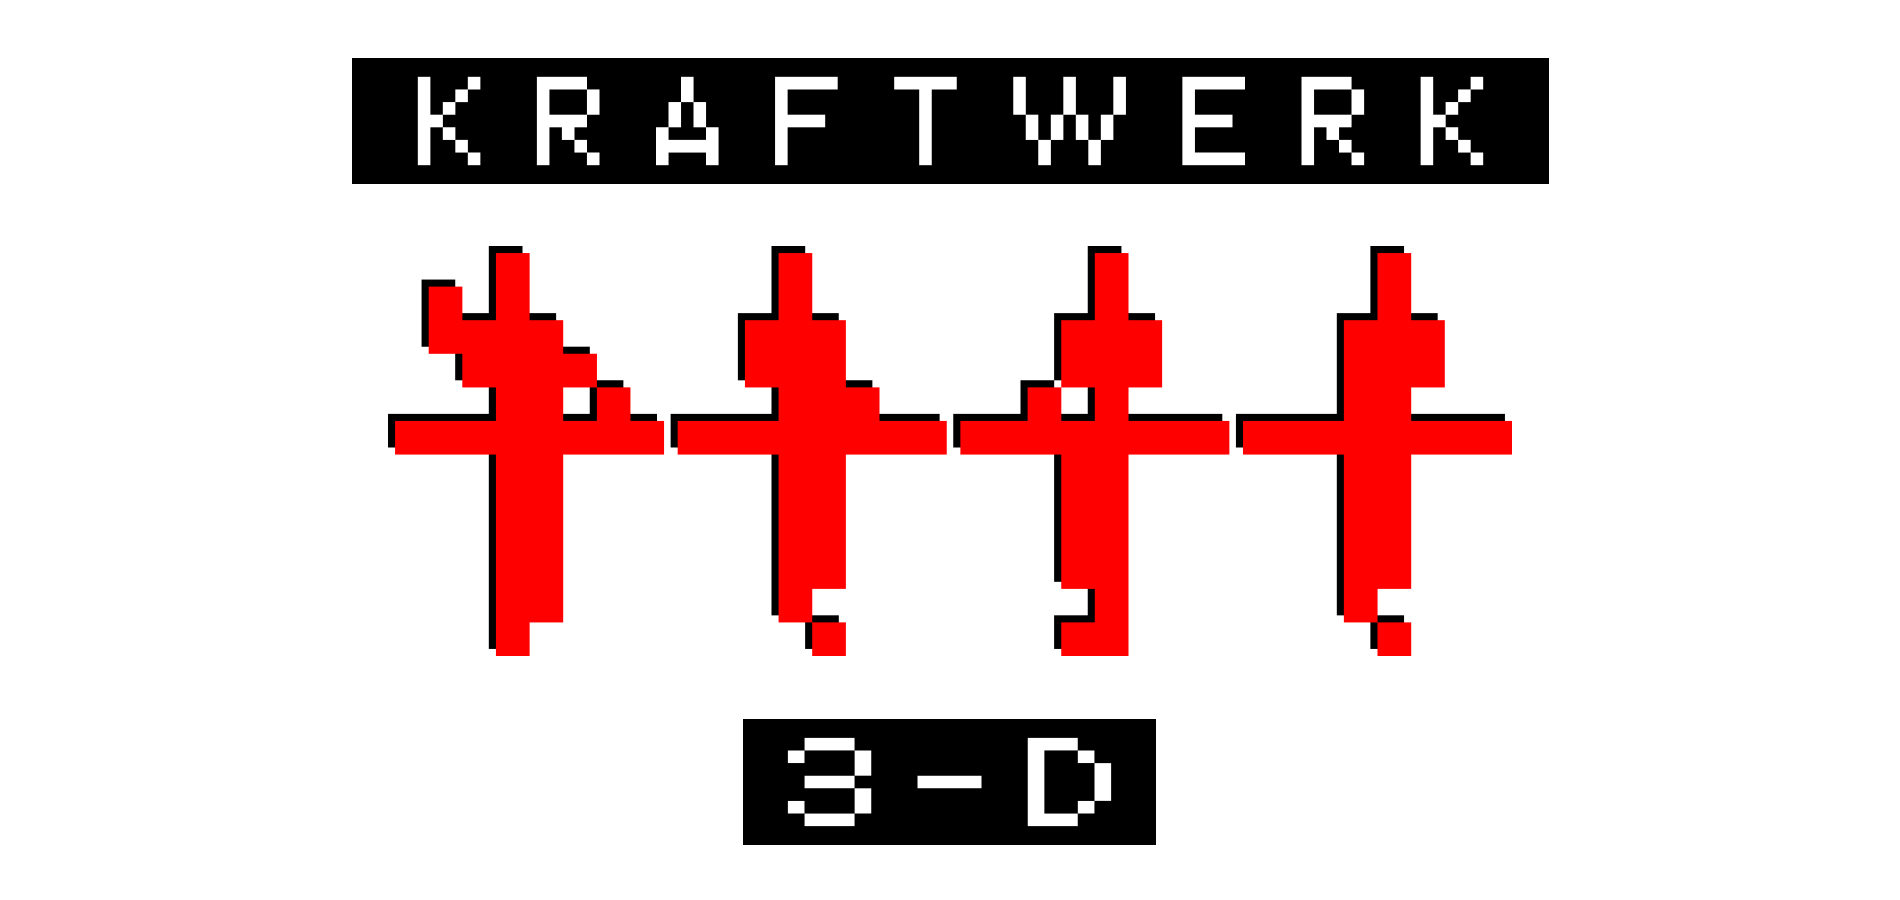 Kraftwerk 3-D